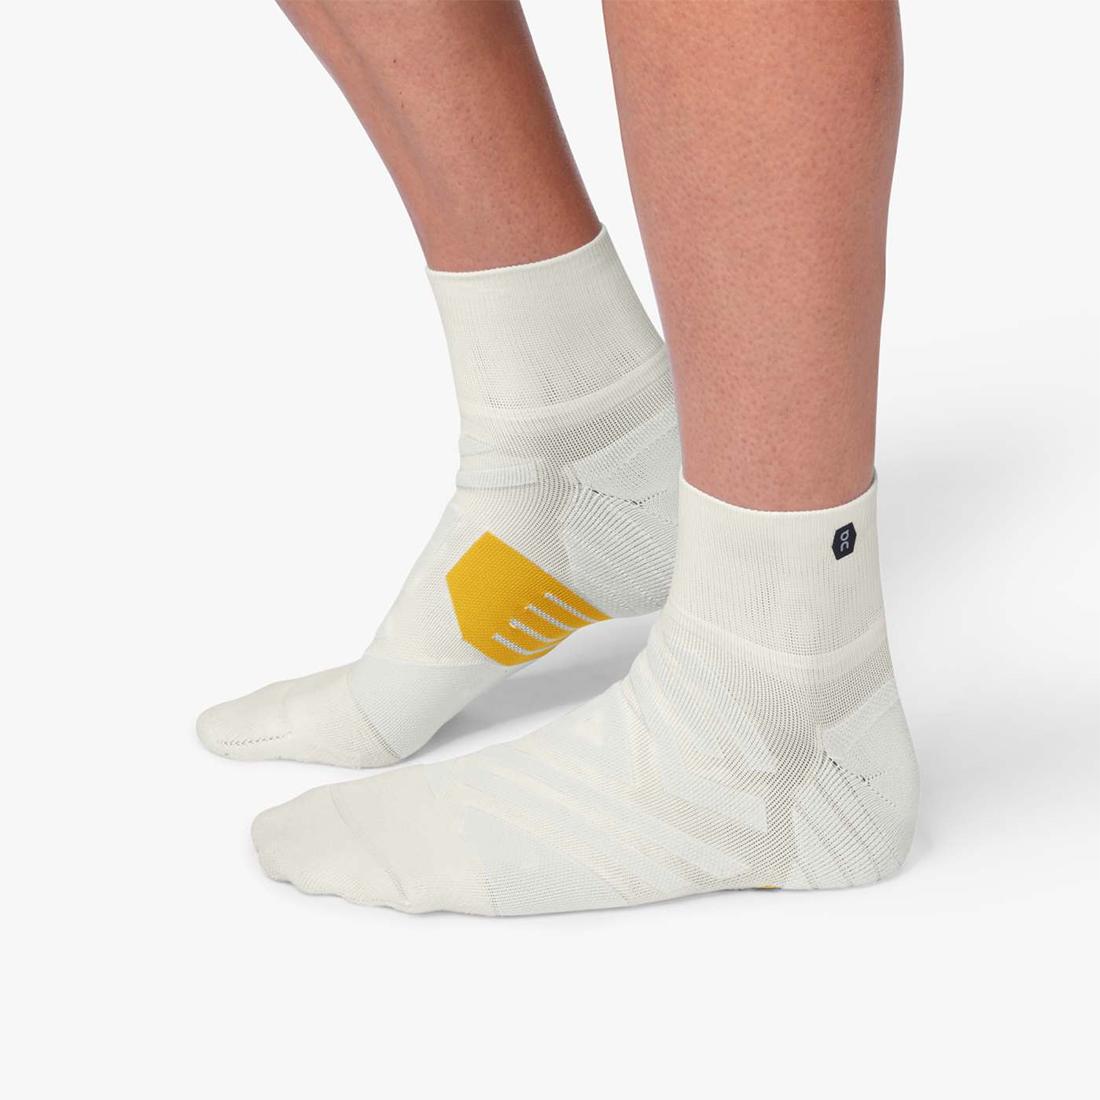  Men's Mid Socks